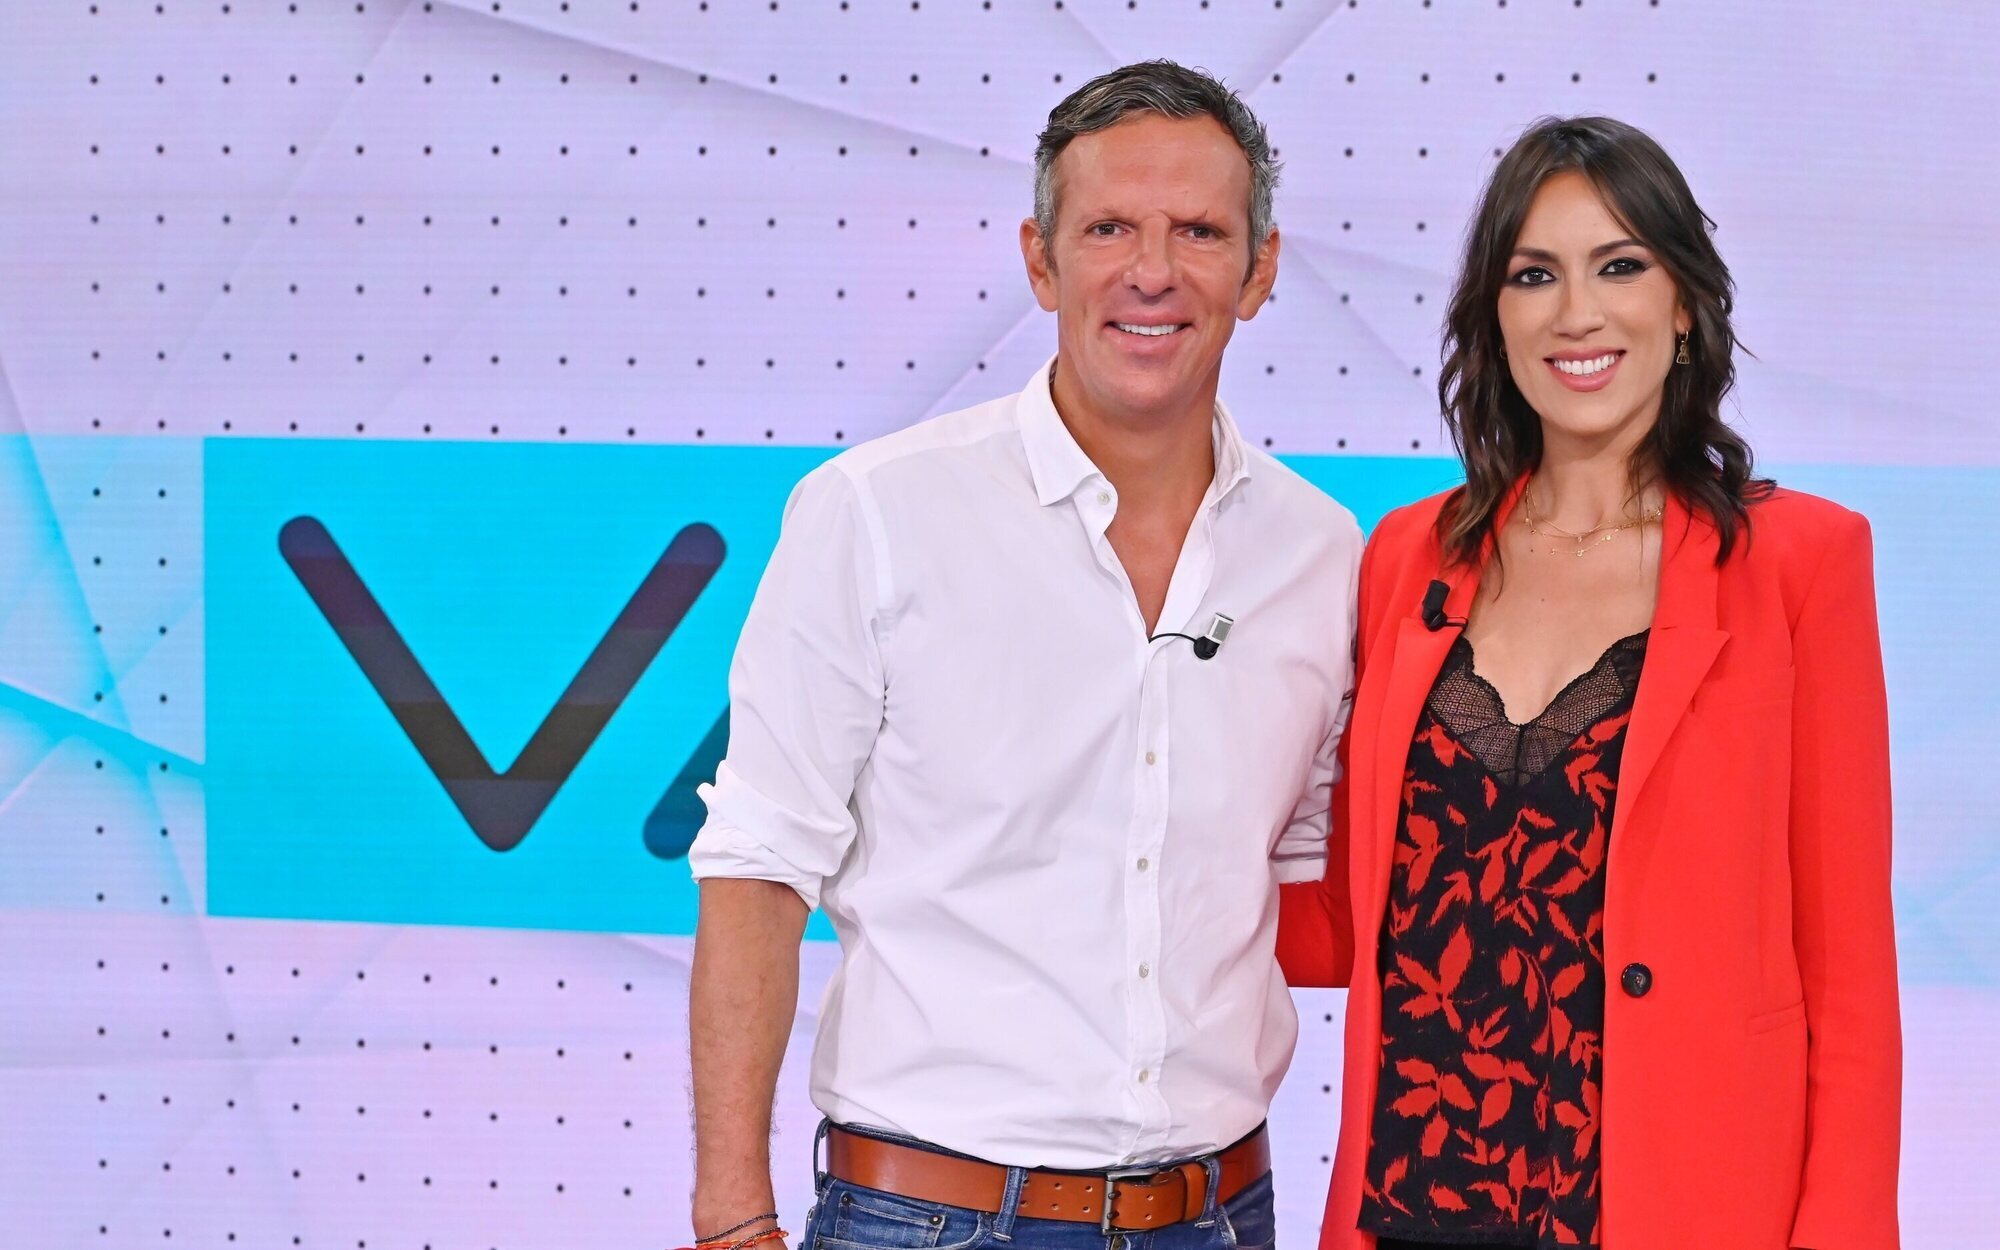 La renovación matinal en audiencias: Así rinden los estrenos de Telecinco y La 1 y los cambios de Antena 3